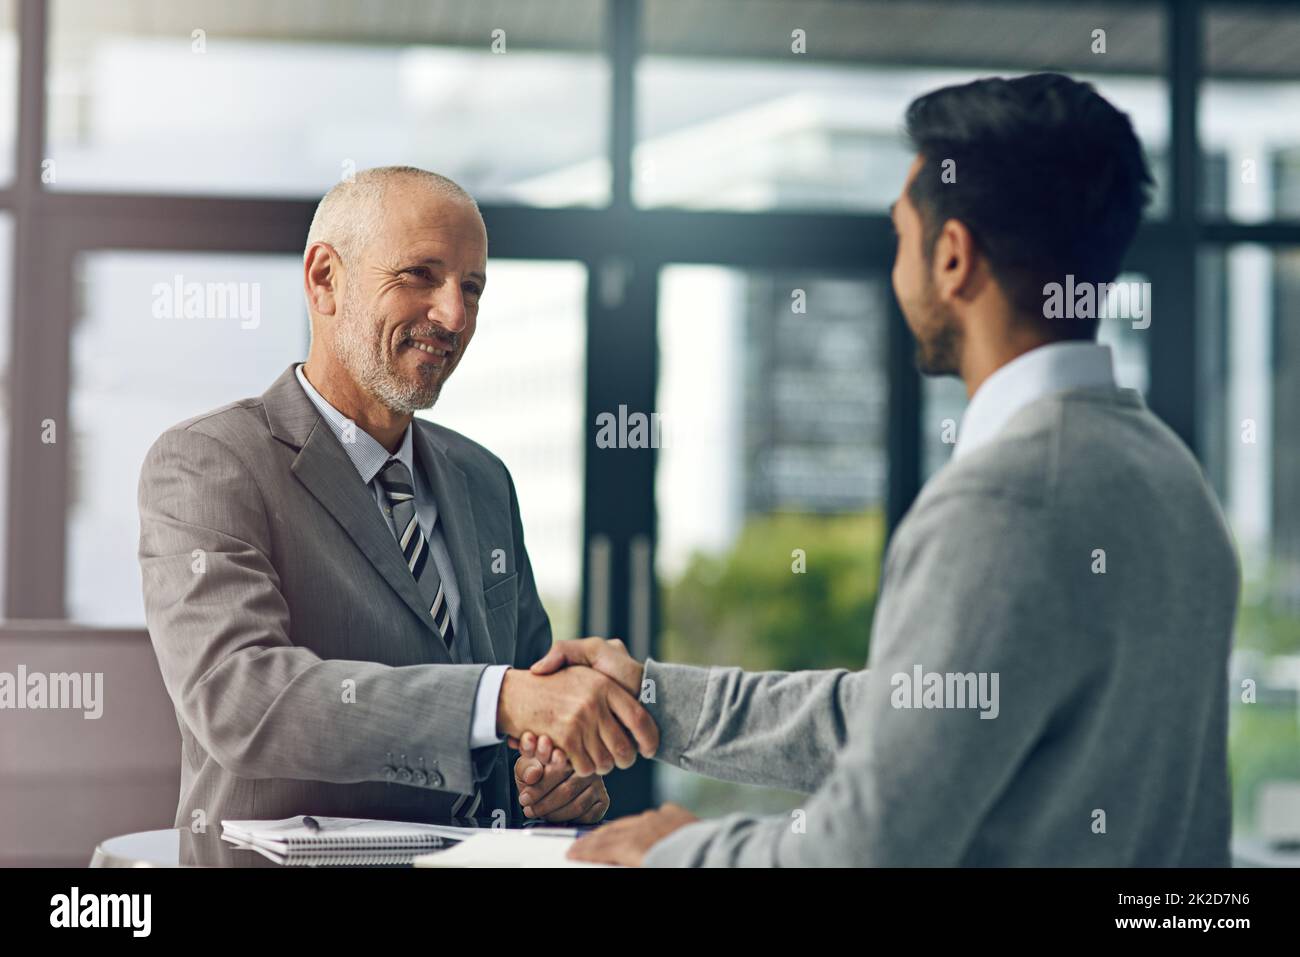 Freut mich, Sie an Bord zu haben. Eine kurze Aufnahme von zwei Geschäftsleuten, die in einem Büro die Hände schütteln. Stockfoto